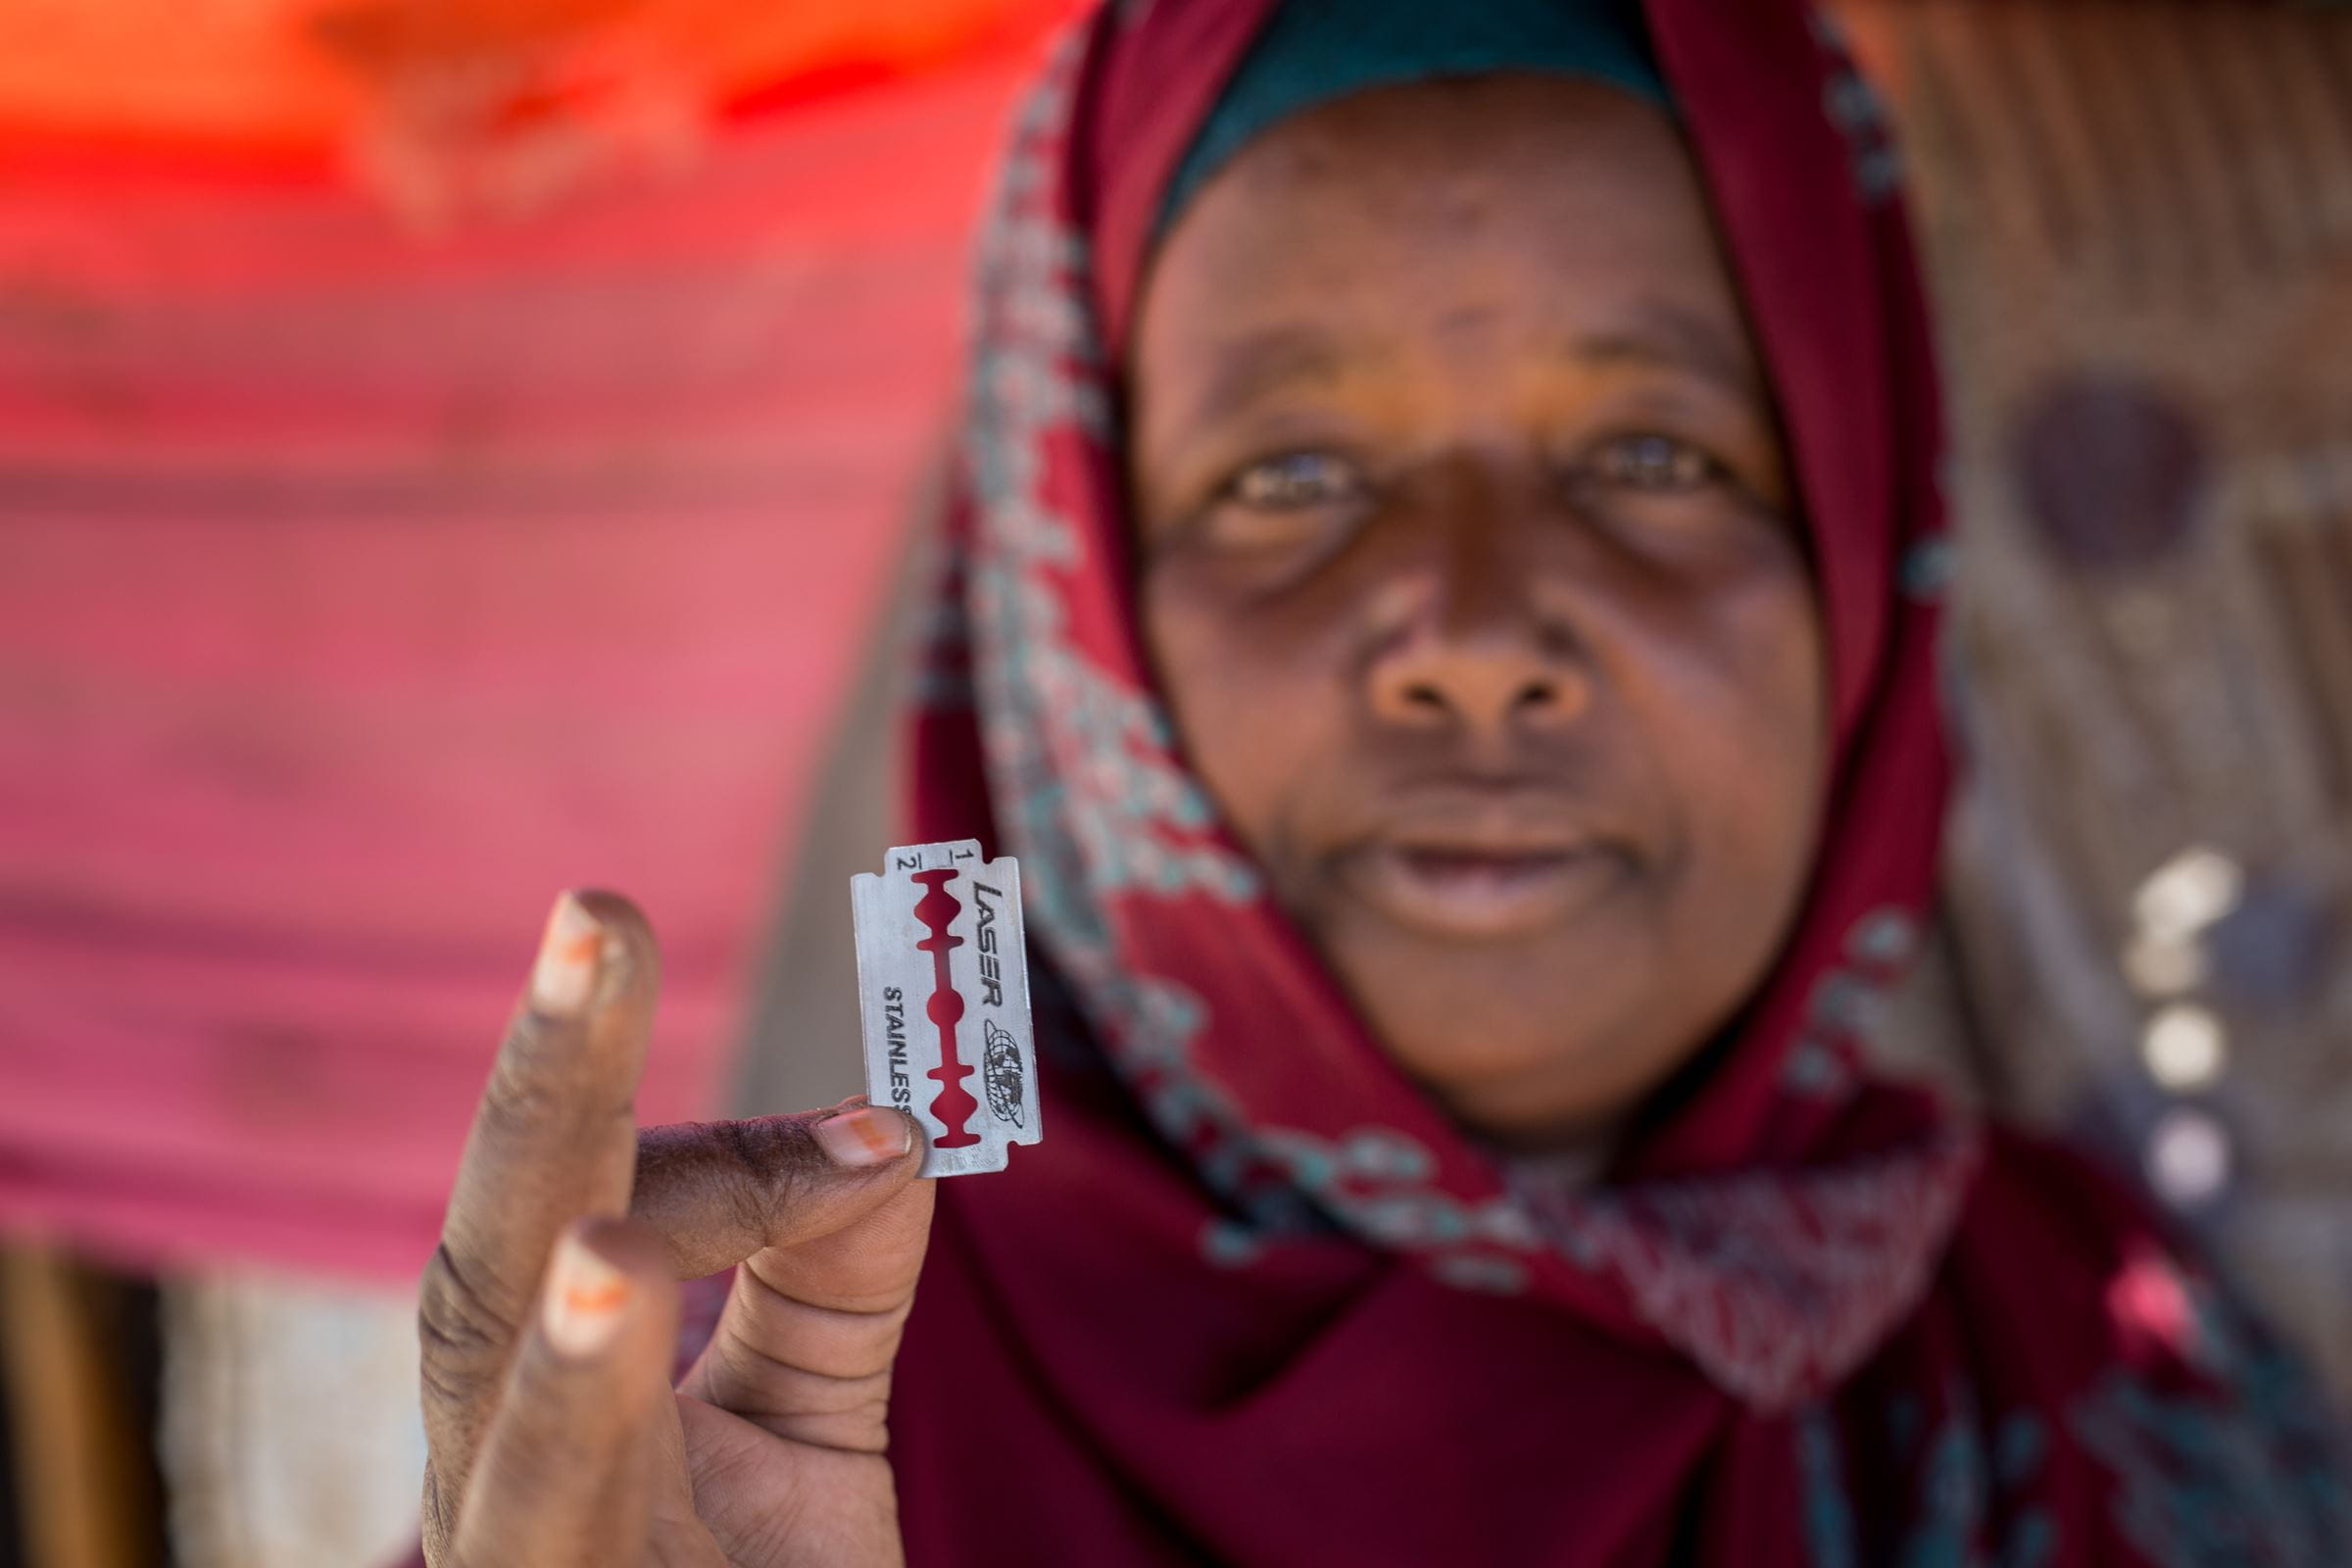 Die ehemalige Beschneiderin Khadra aus Somaliland hält eine Rasierklinge in die Kamera. (Quelle: Mustafa Saeed/Kindernothilfe)